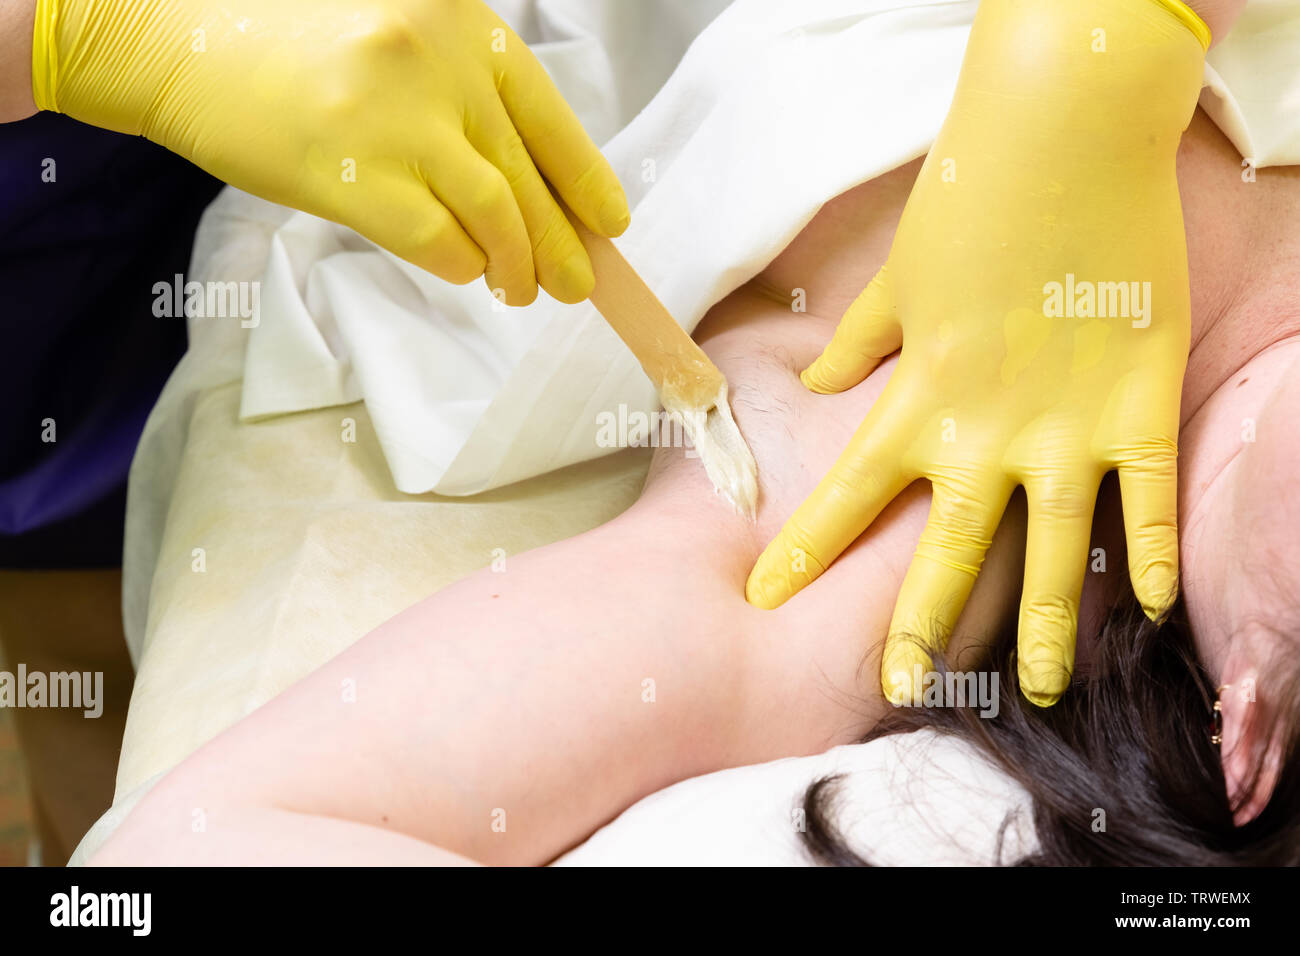 Methode der Haarentfernung Zuckerpaste zur Süßung c weiblichen Körper. Das Werk und die Methoden der Master angezeigt. Stockfoto